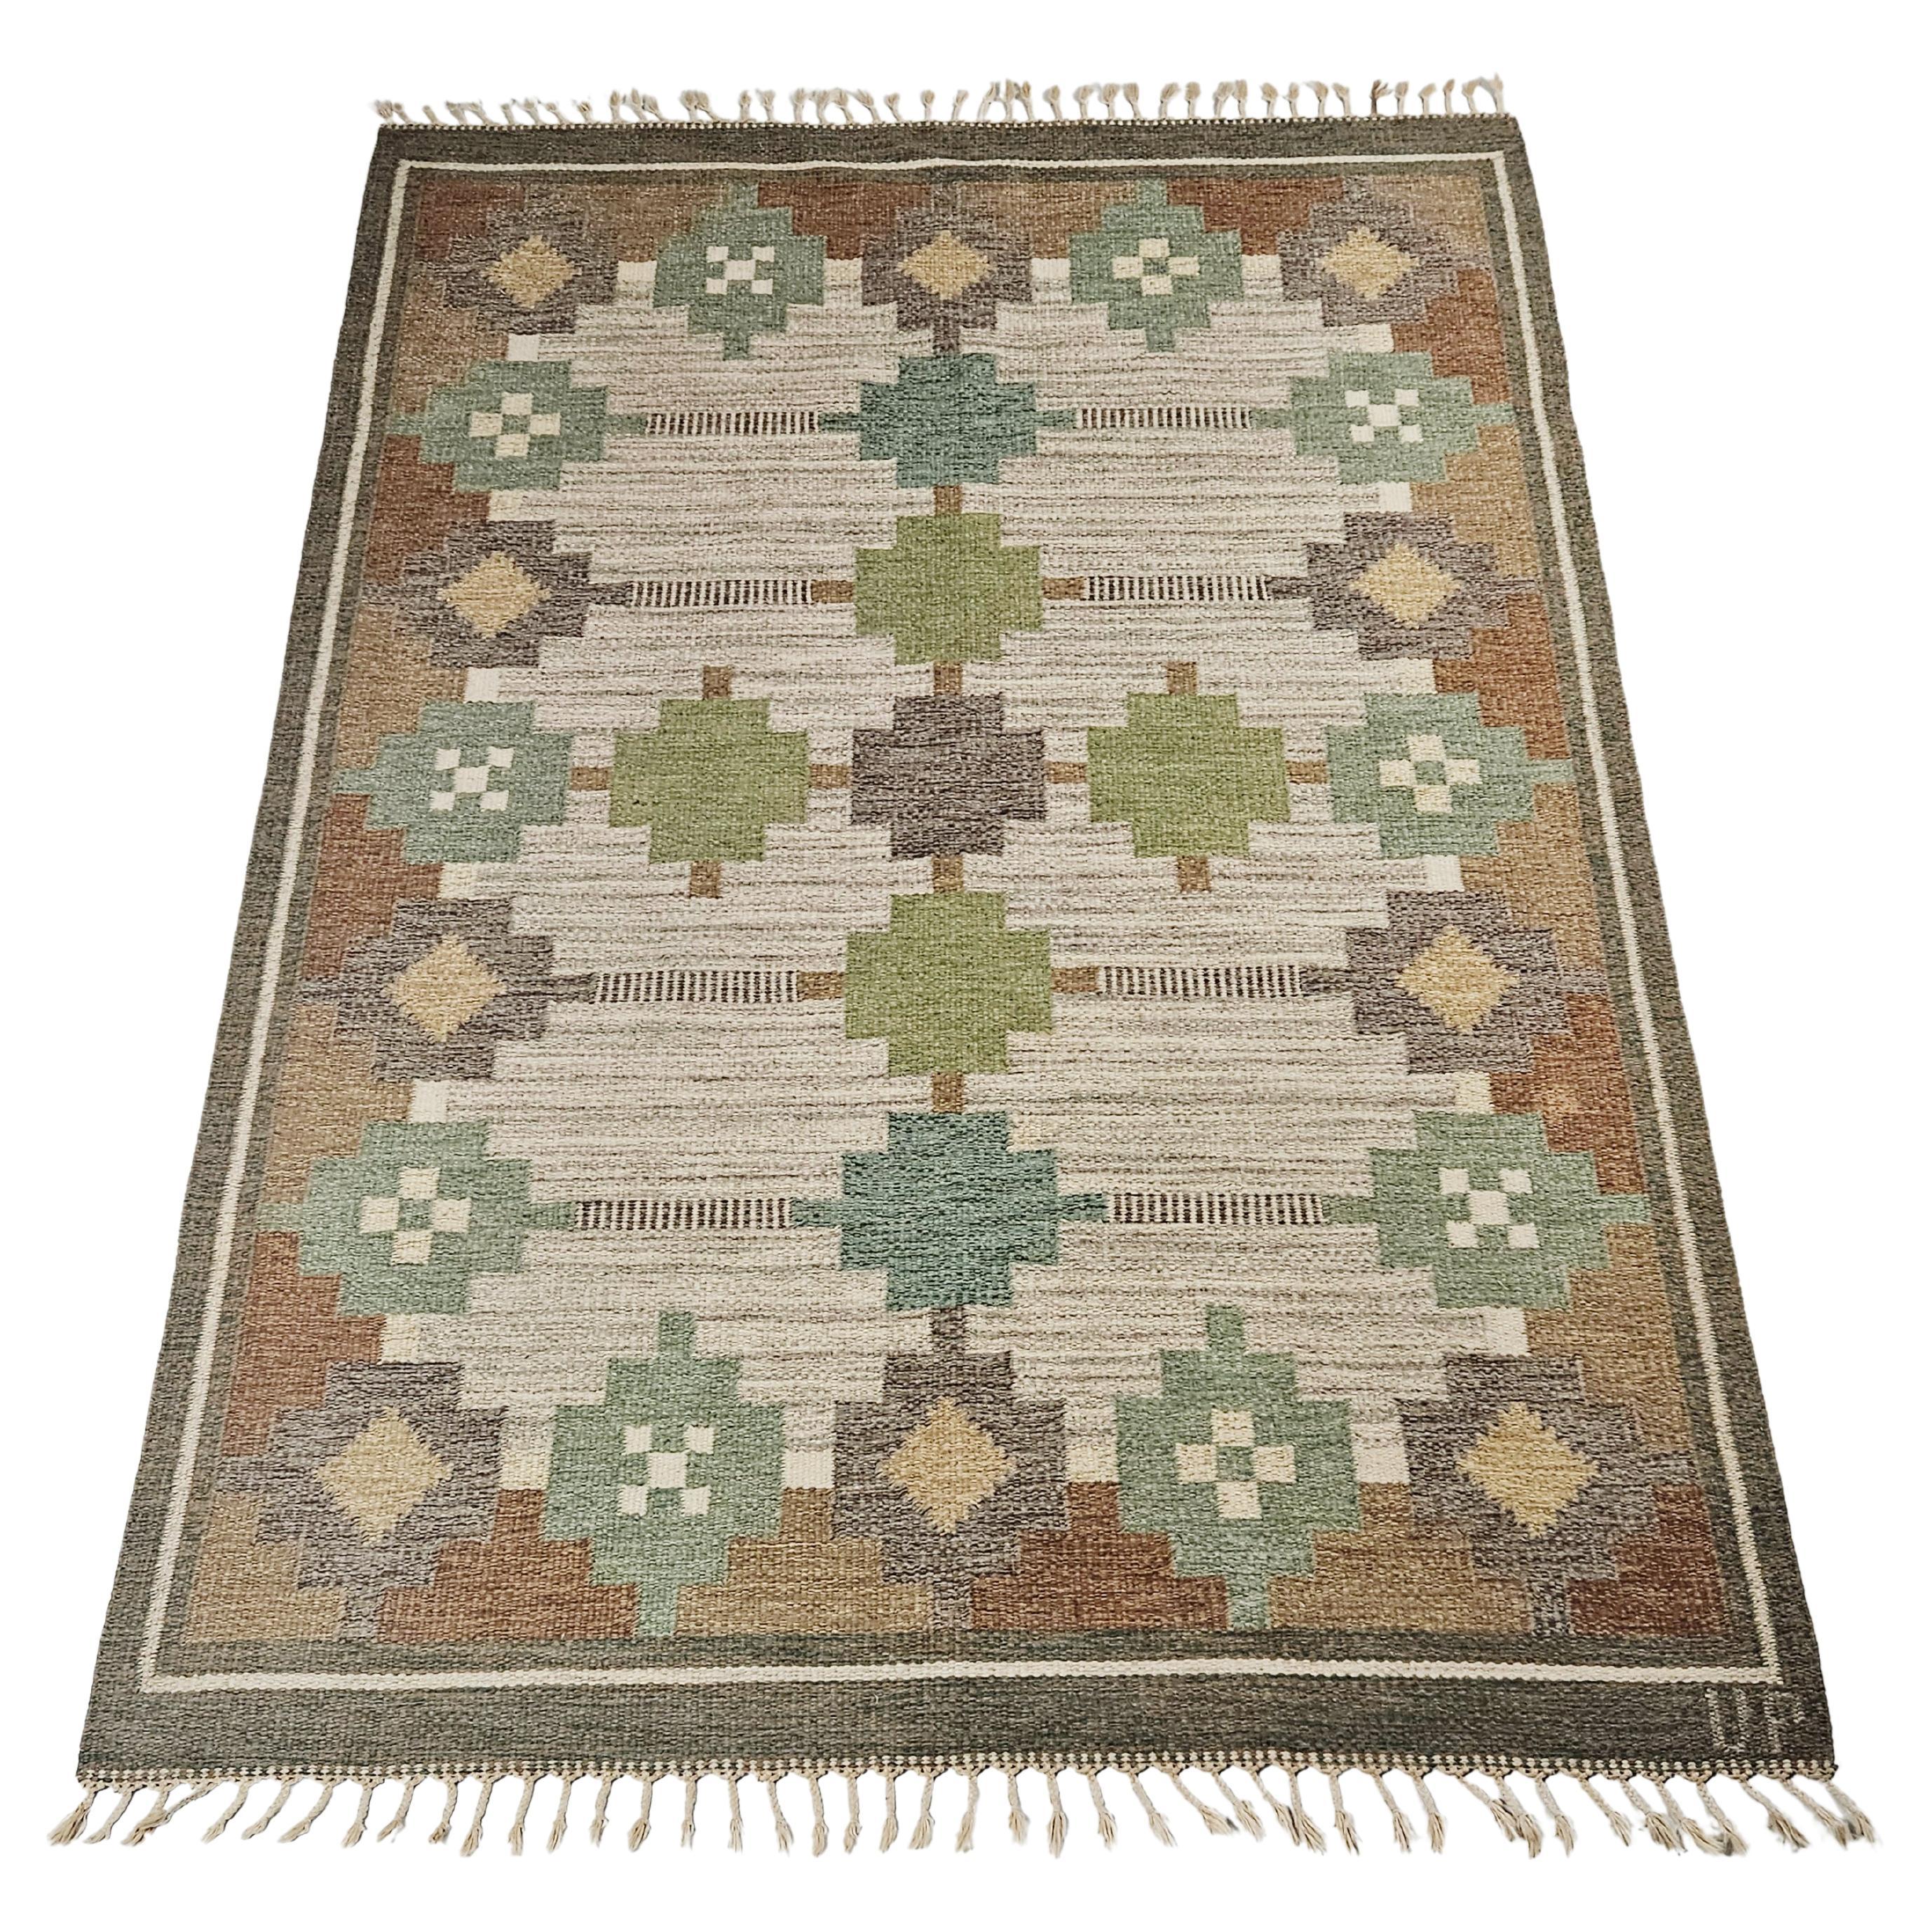 Flatweave carpet by Ulla Parkdahl, Sweden, 1950s